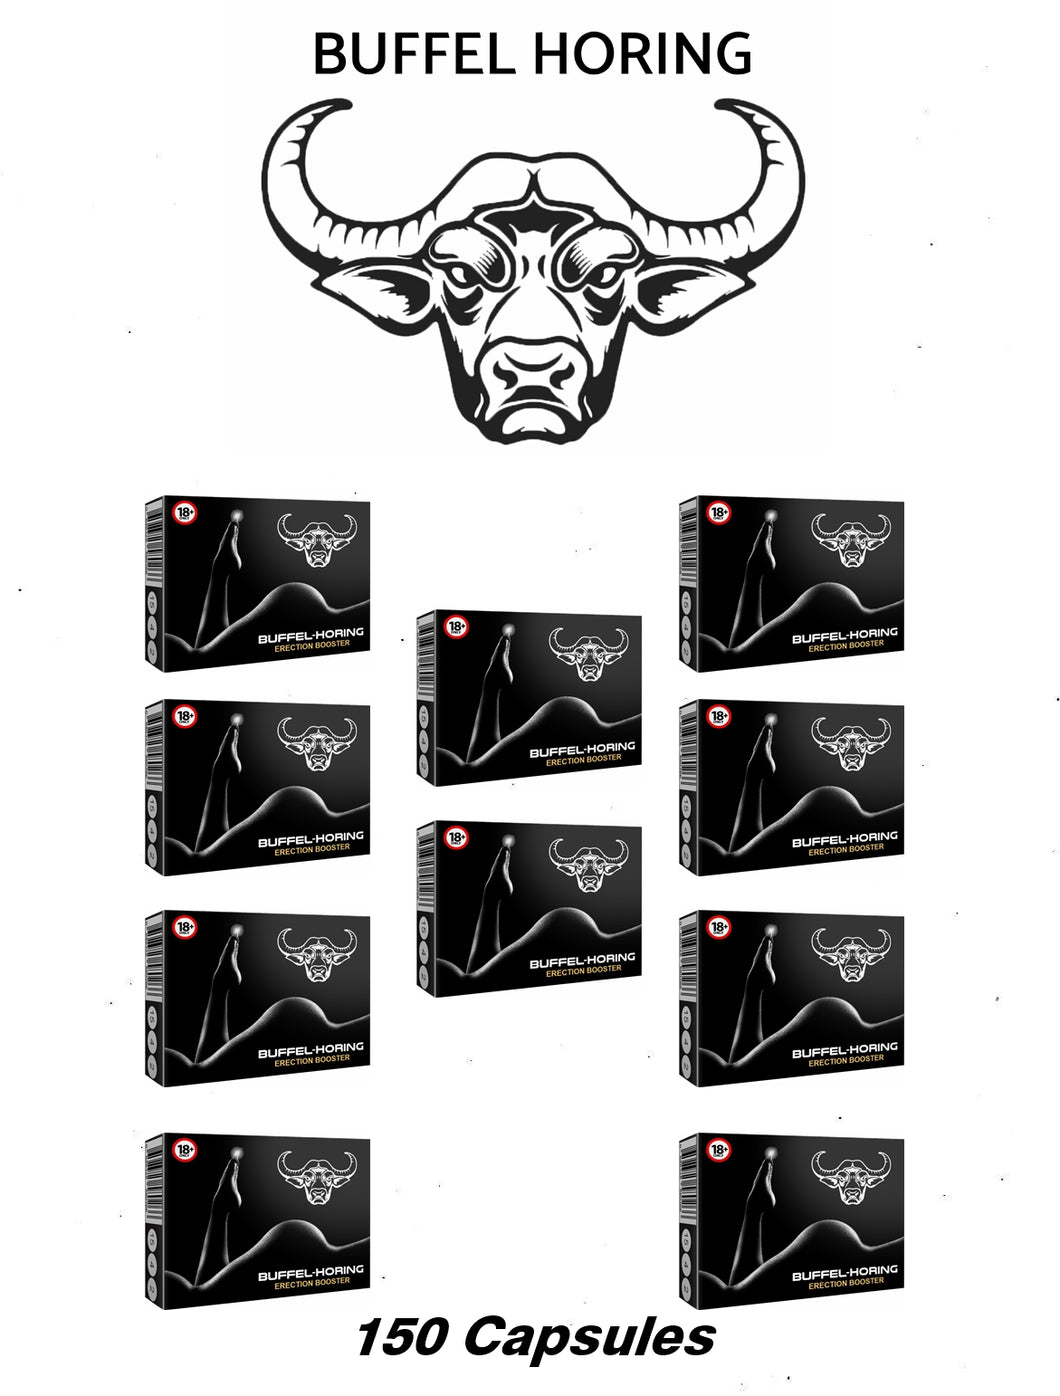 Buffel-Horing x10 (150 capsules)